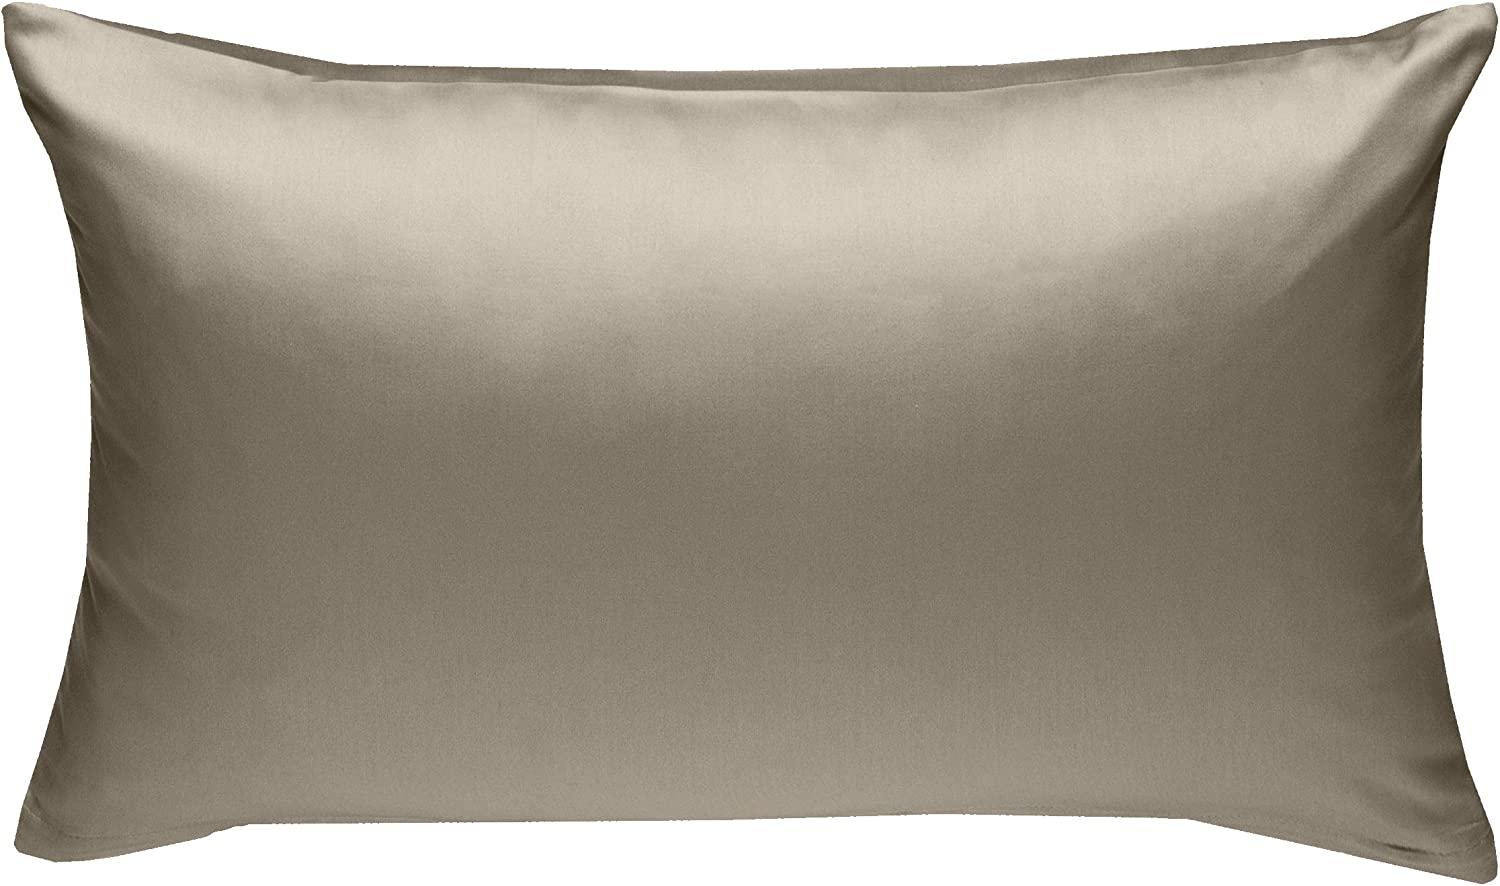 Bettwaesche-mit-Stil Mako-Satin / Baumwollsatin Bettwäsche uni / einfarbig braun Kissenbezug 50x70 cm Bild 1